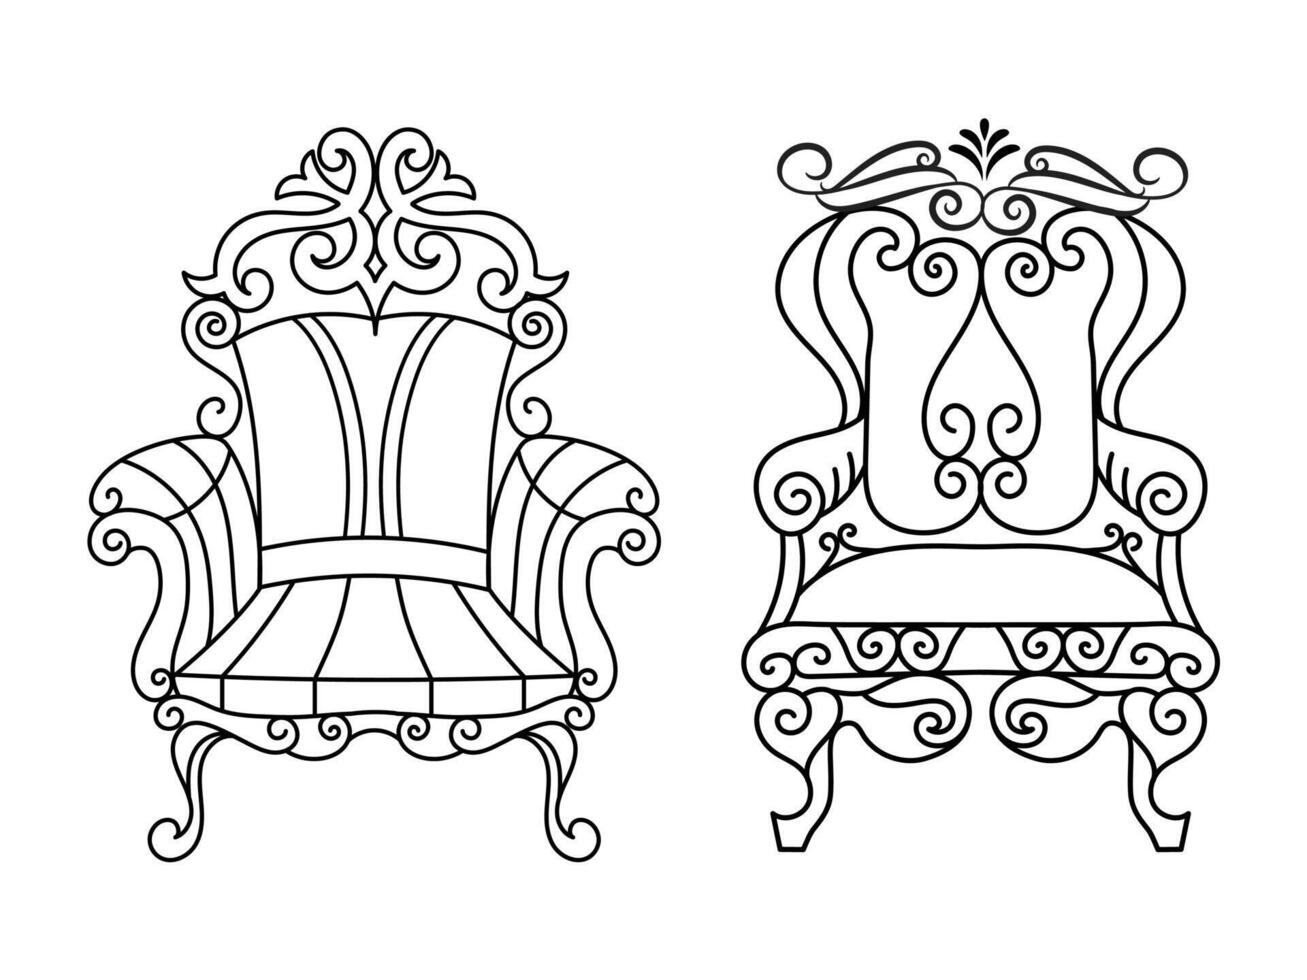 moderne meubles fauteuil maison, continu ligne dessin exécutif Bureau chaise concept, canapé chaise vecteur illustration